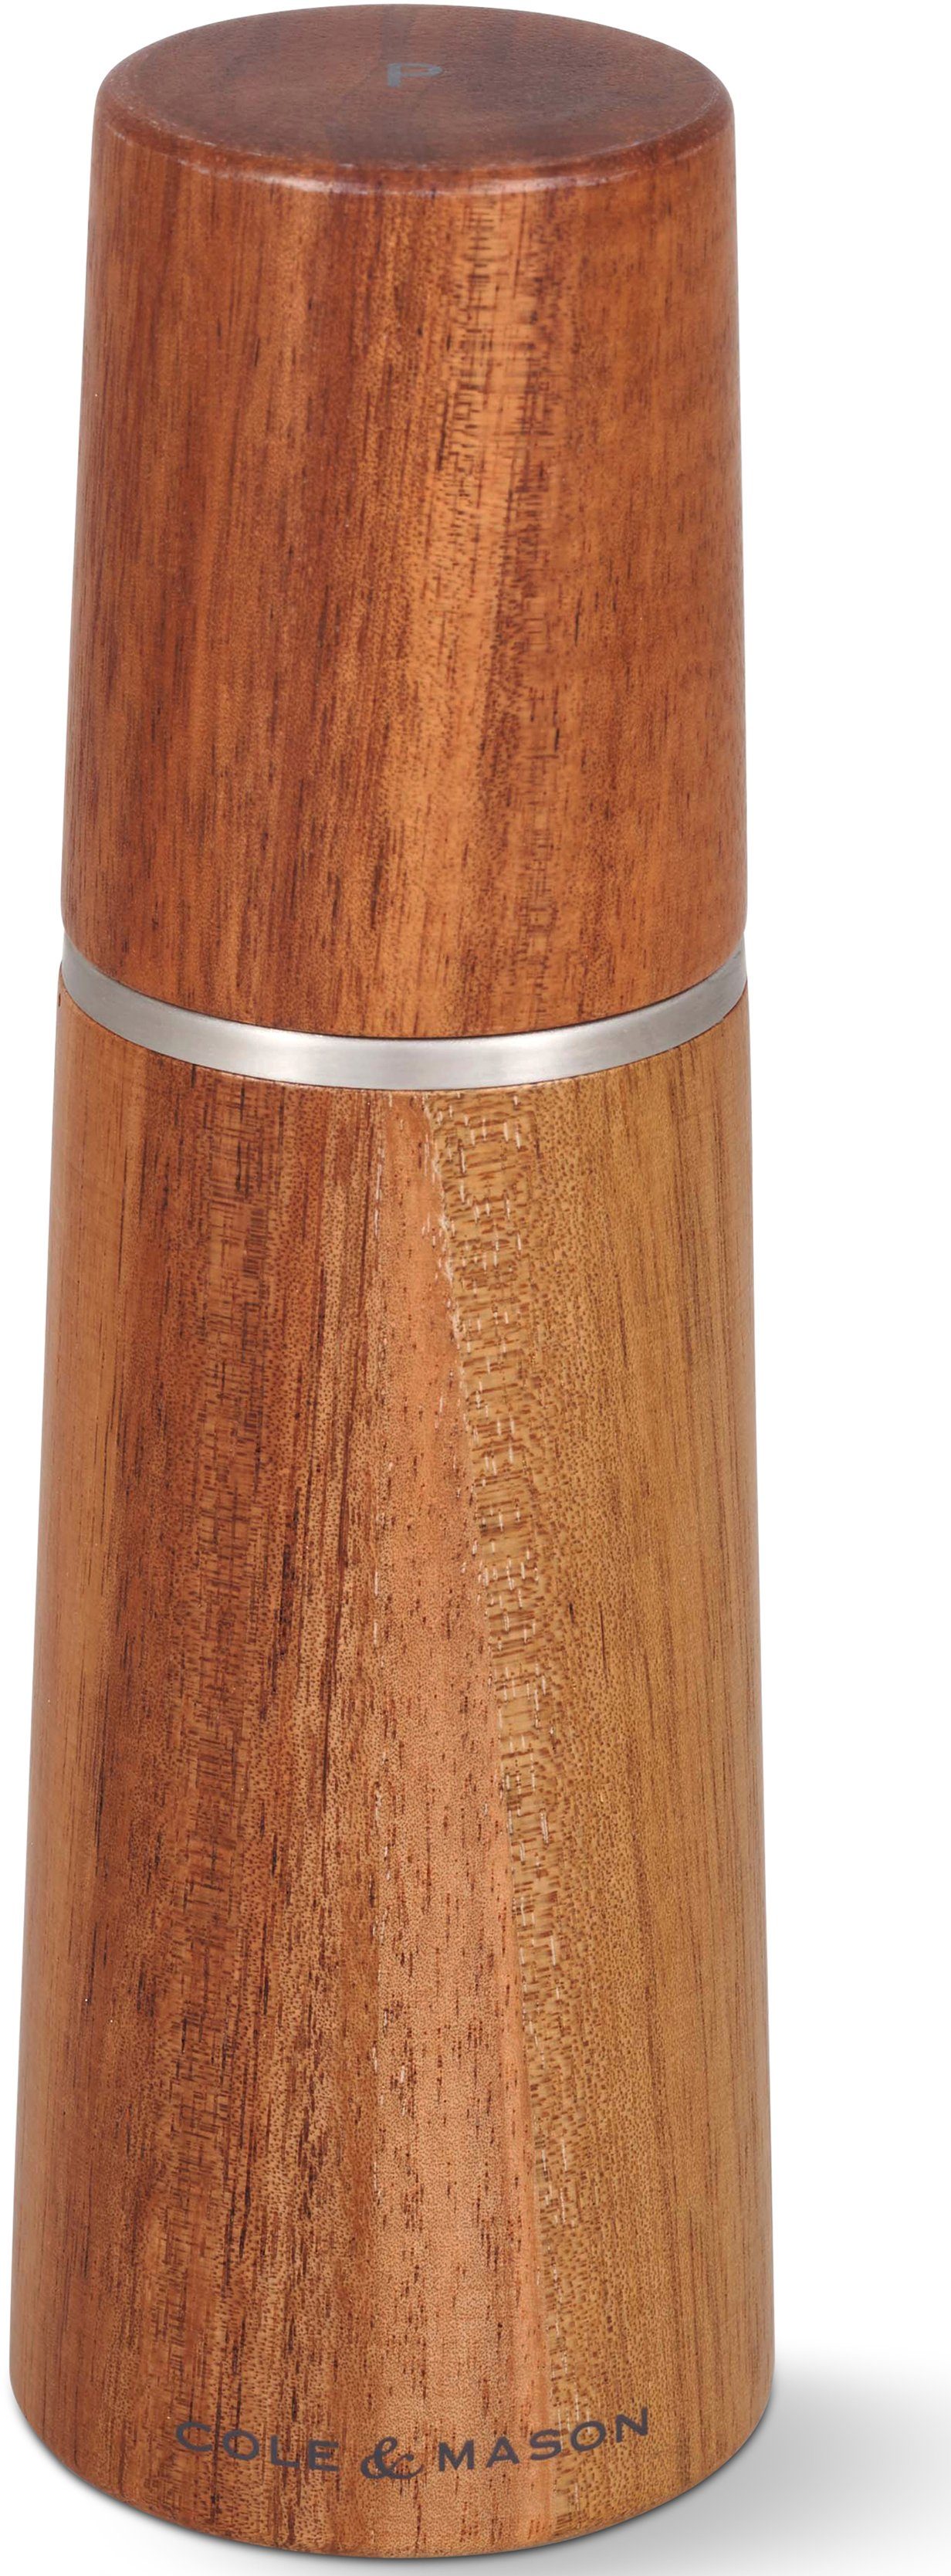 Cole & Akazienholz, Mason hochwertigem Pfeffermühle Karbonmahlwerk Marlow, aus